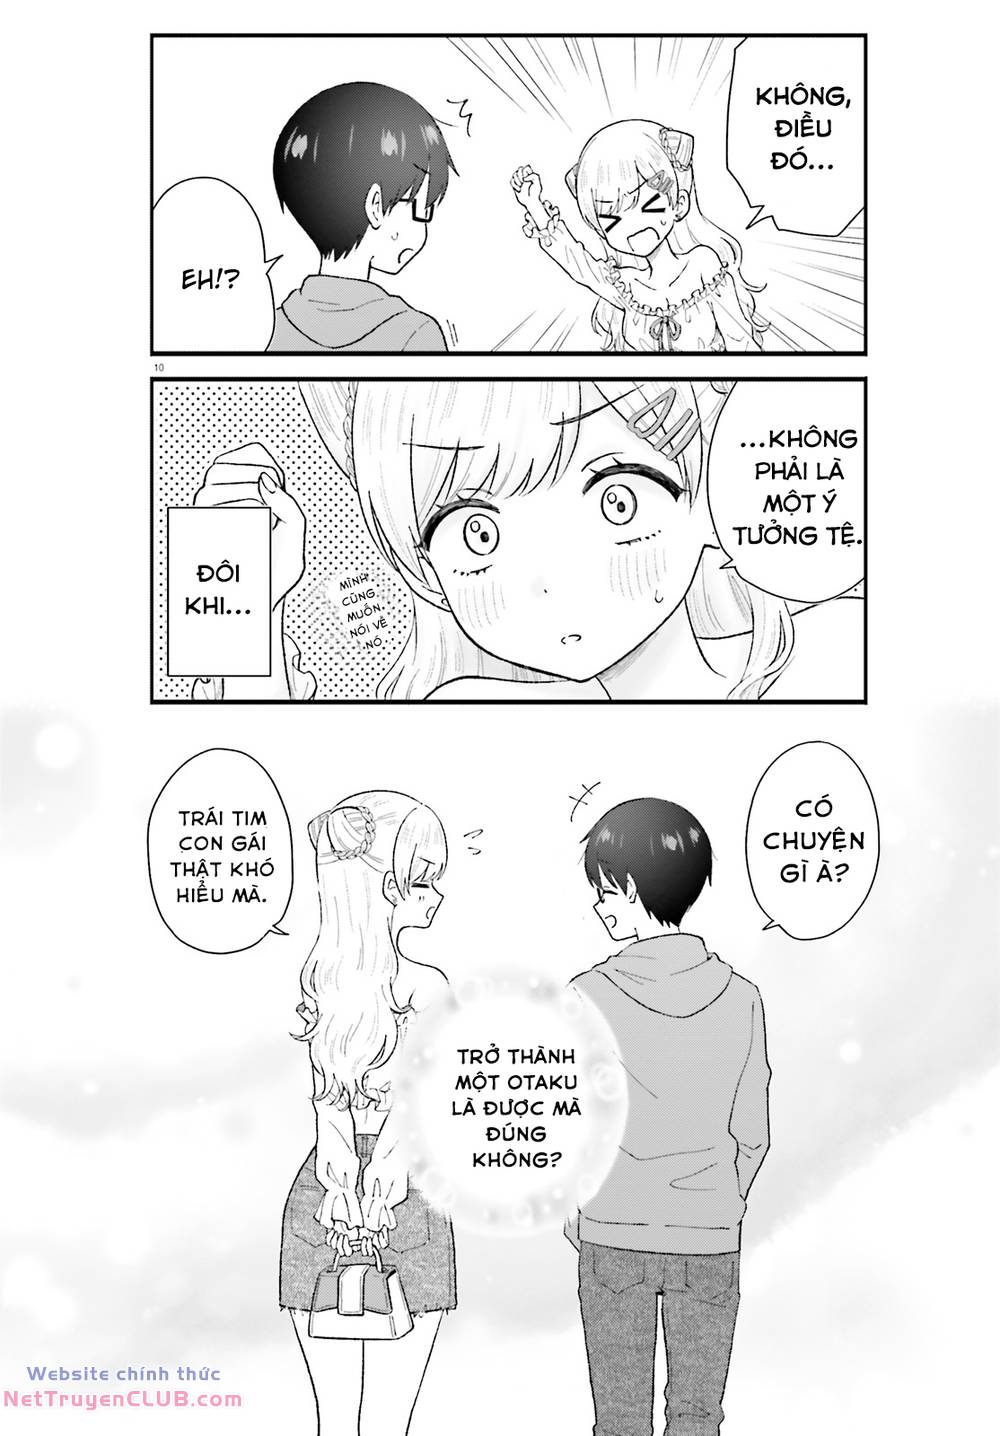 Uchida-San Chắc Chắn Không Phải Là Một Gyaru!!! Chương 4 Trang 10